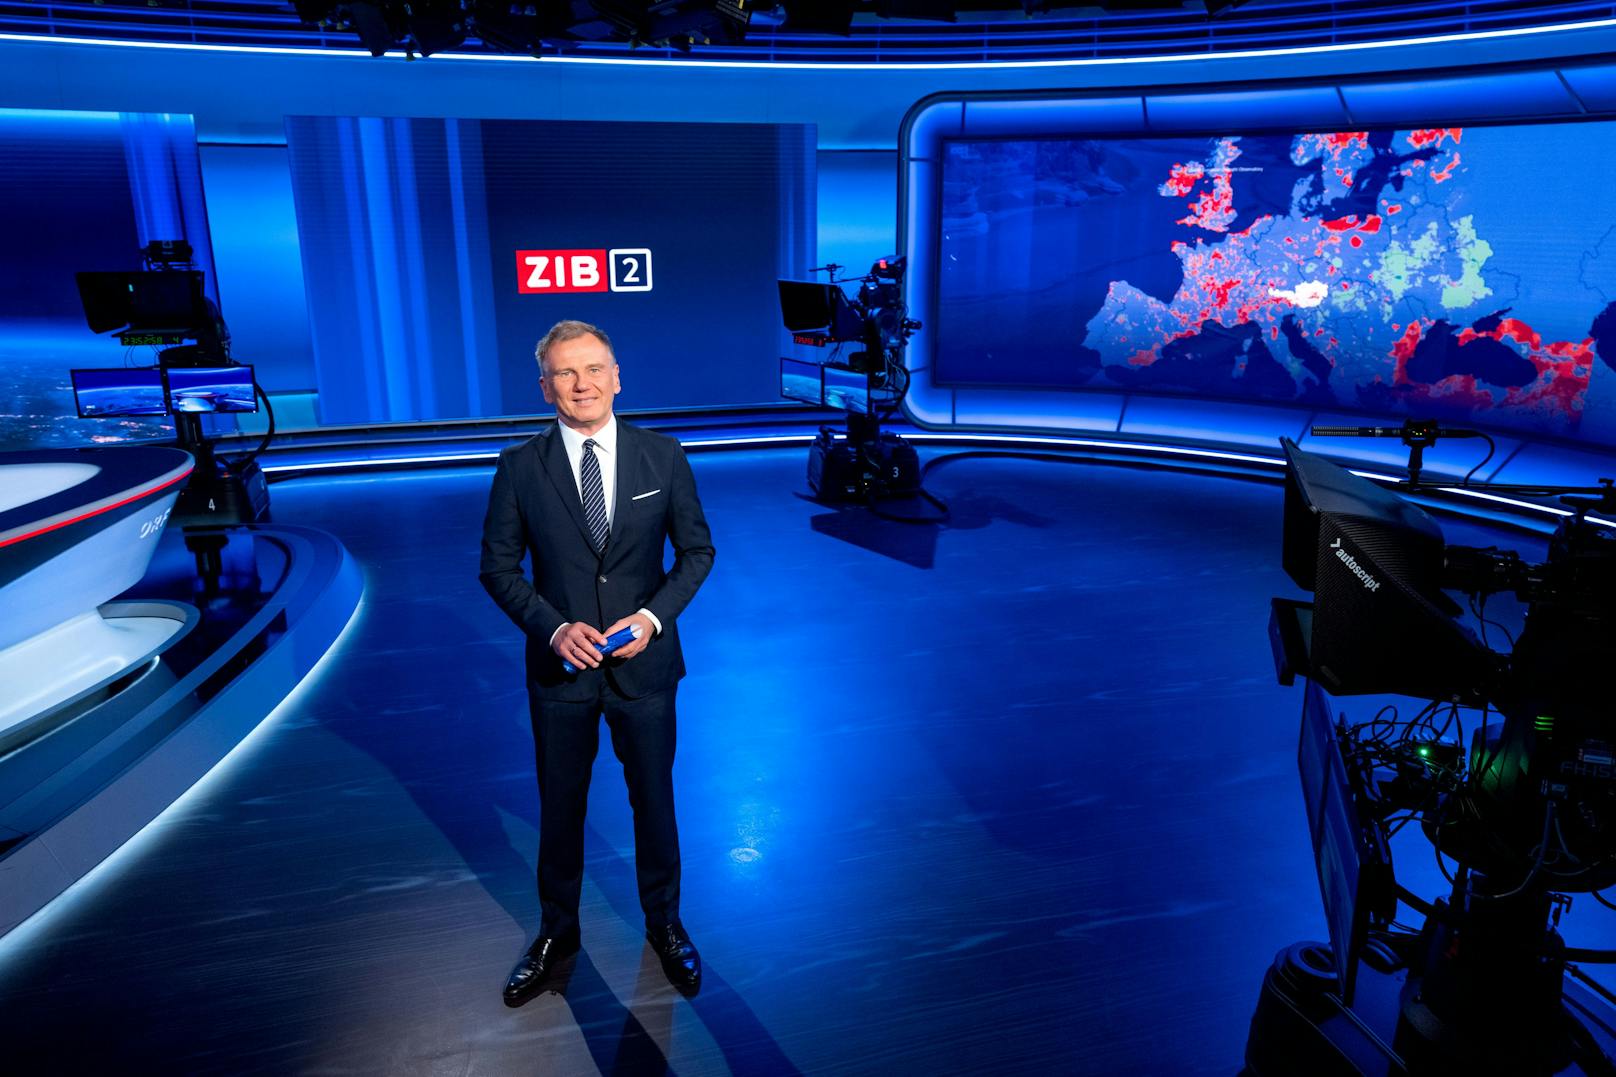 Zeitgleich ausgestrahlt führt Armin Wolf aber auch im neuen TV-Studio durch die ZIB2 auf ORF2.